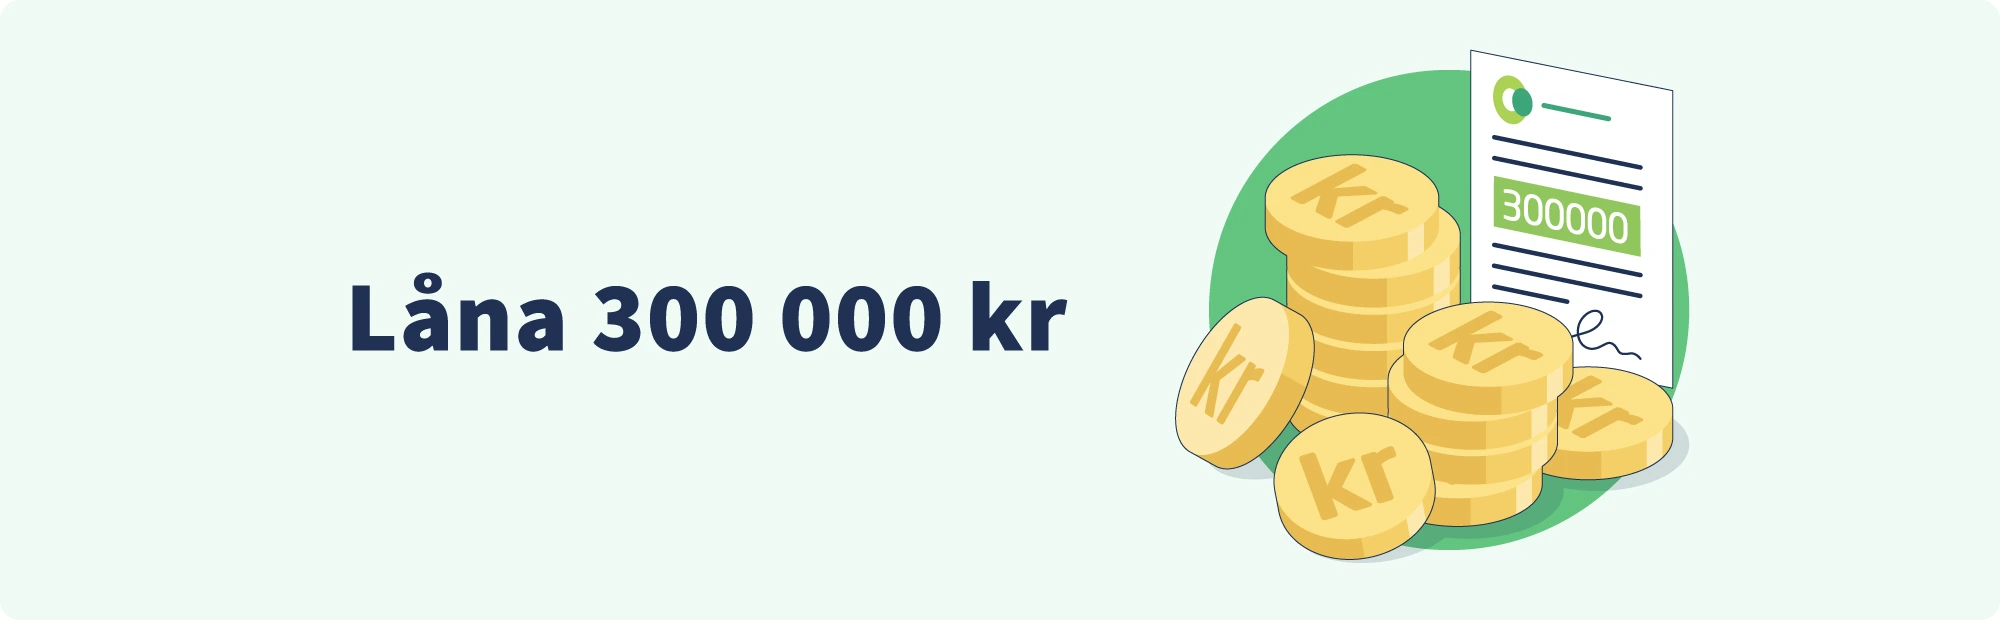 Låna 300 000 kr